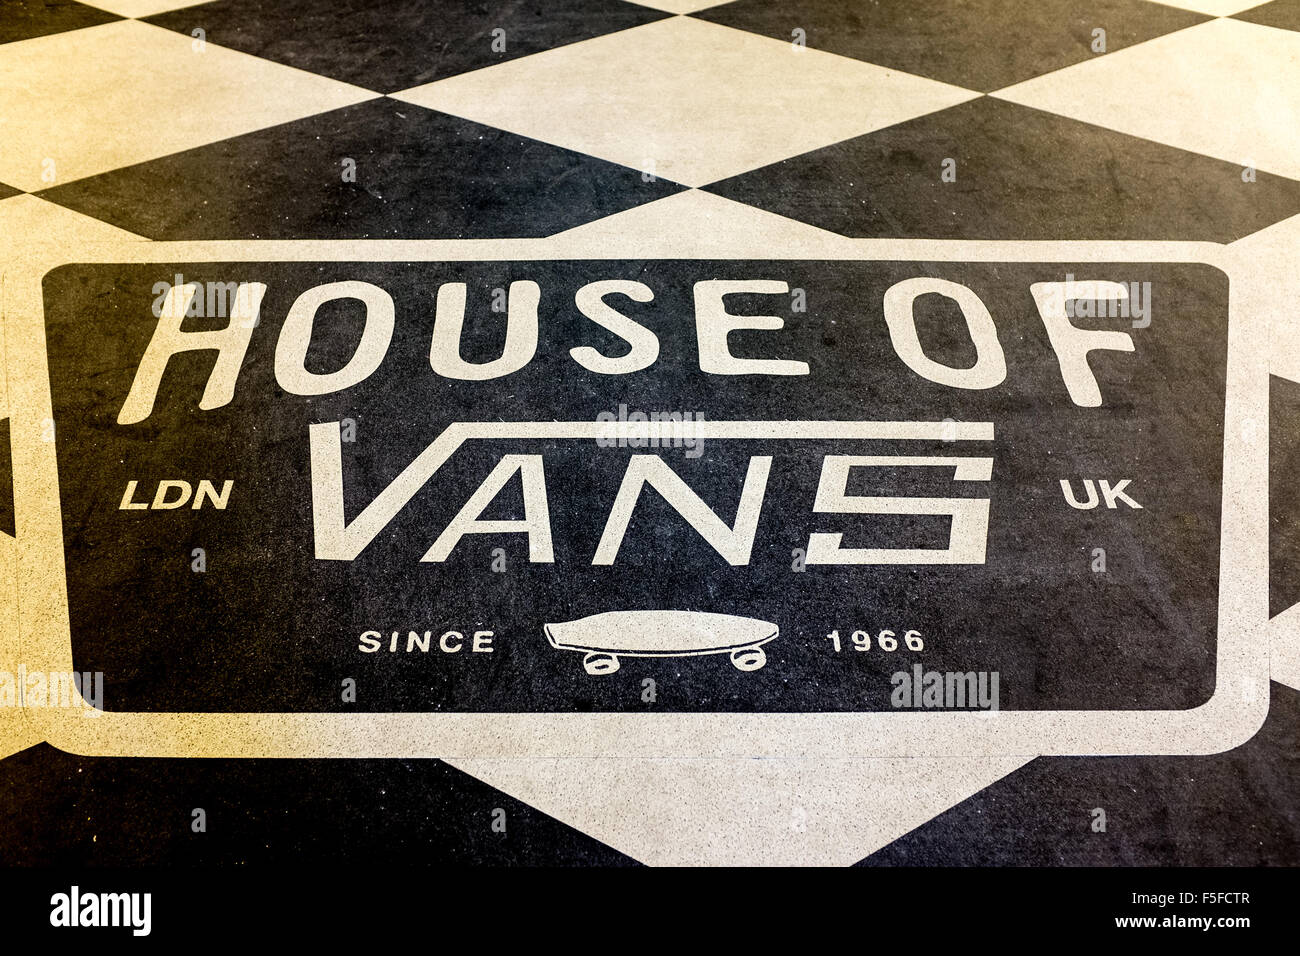 House of vans logo on tiled floor Stock Photo